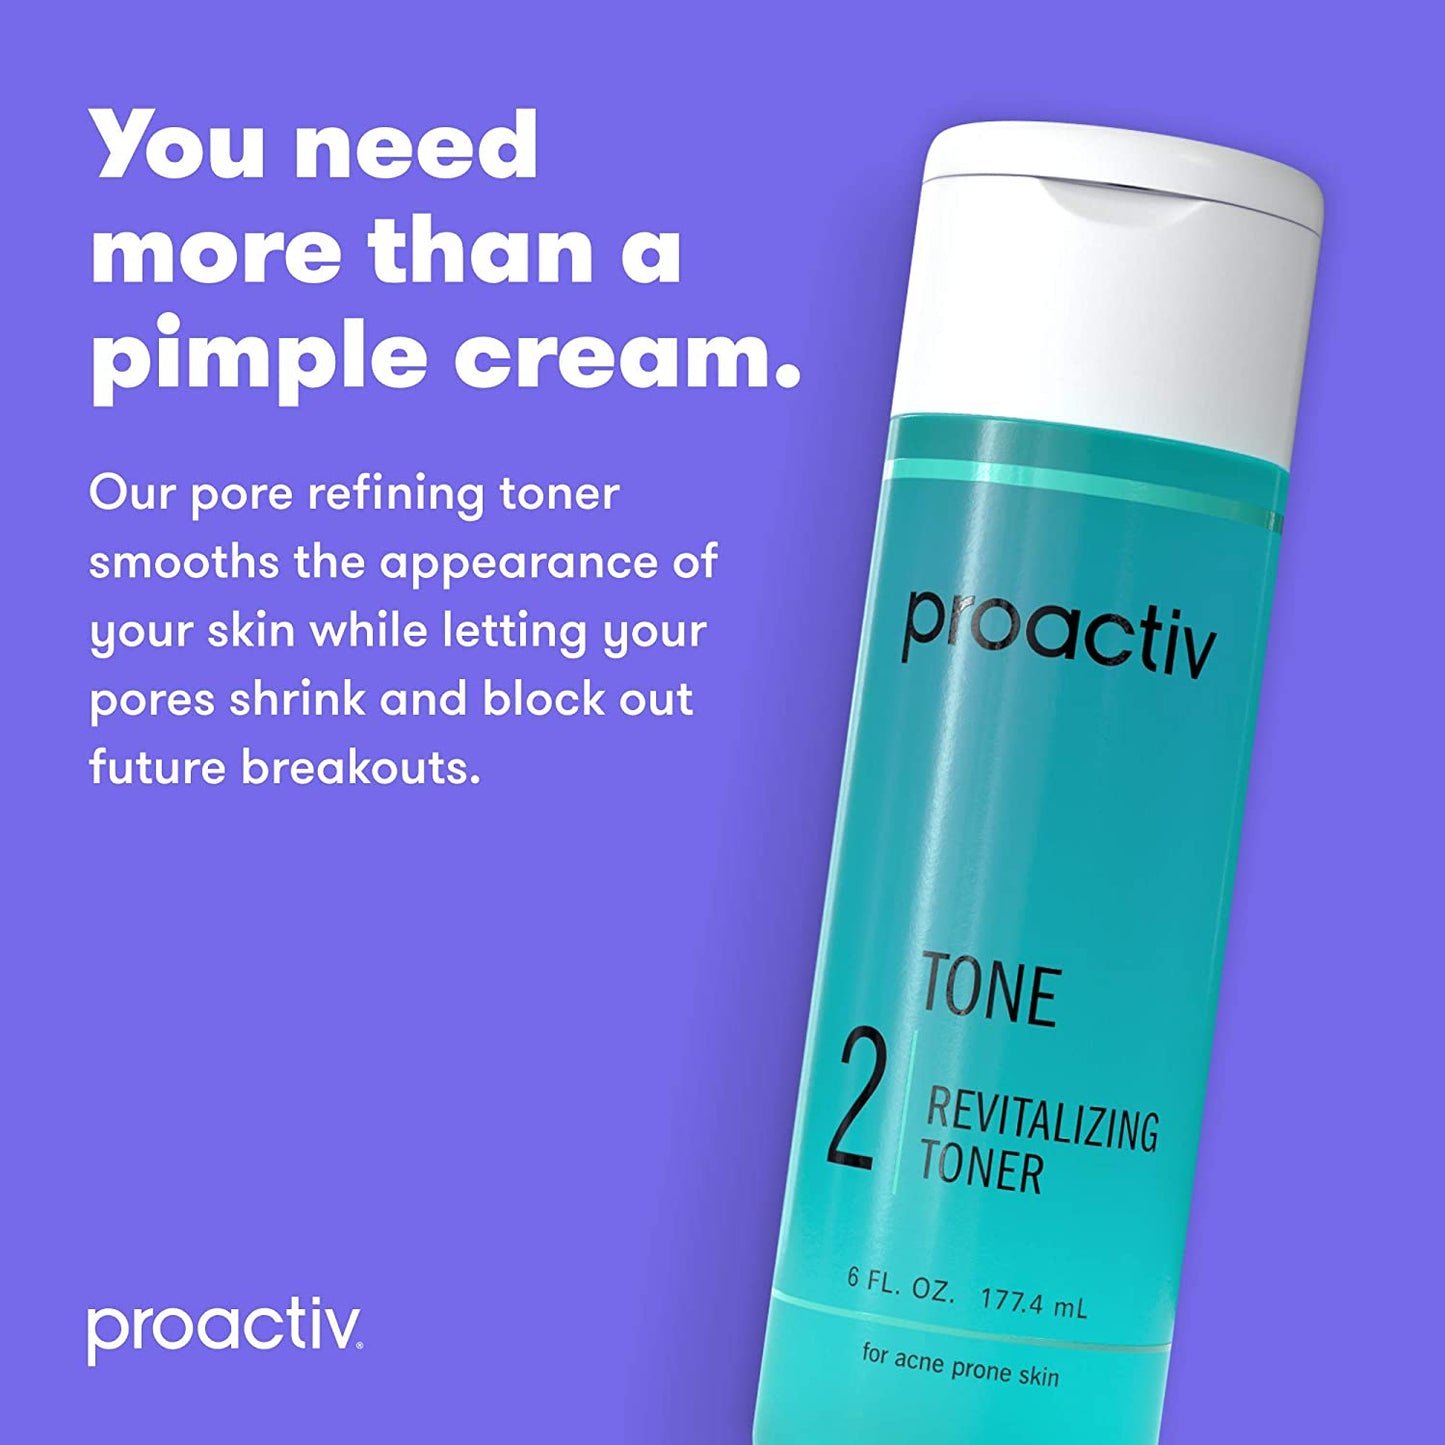 Proactiv 2 Tone Revitalizing Toner Glycolic Acid and Witch Hazel Formula for Acne Prone Skin, 6 fl.oz / 177.4 ml